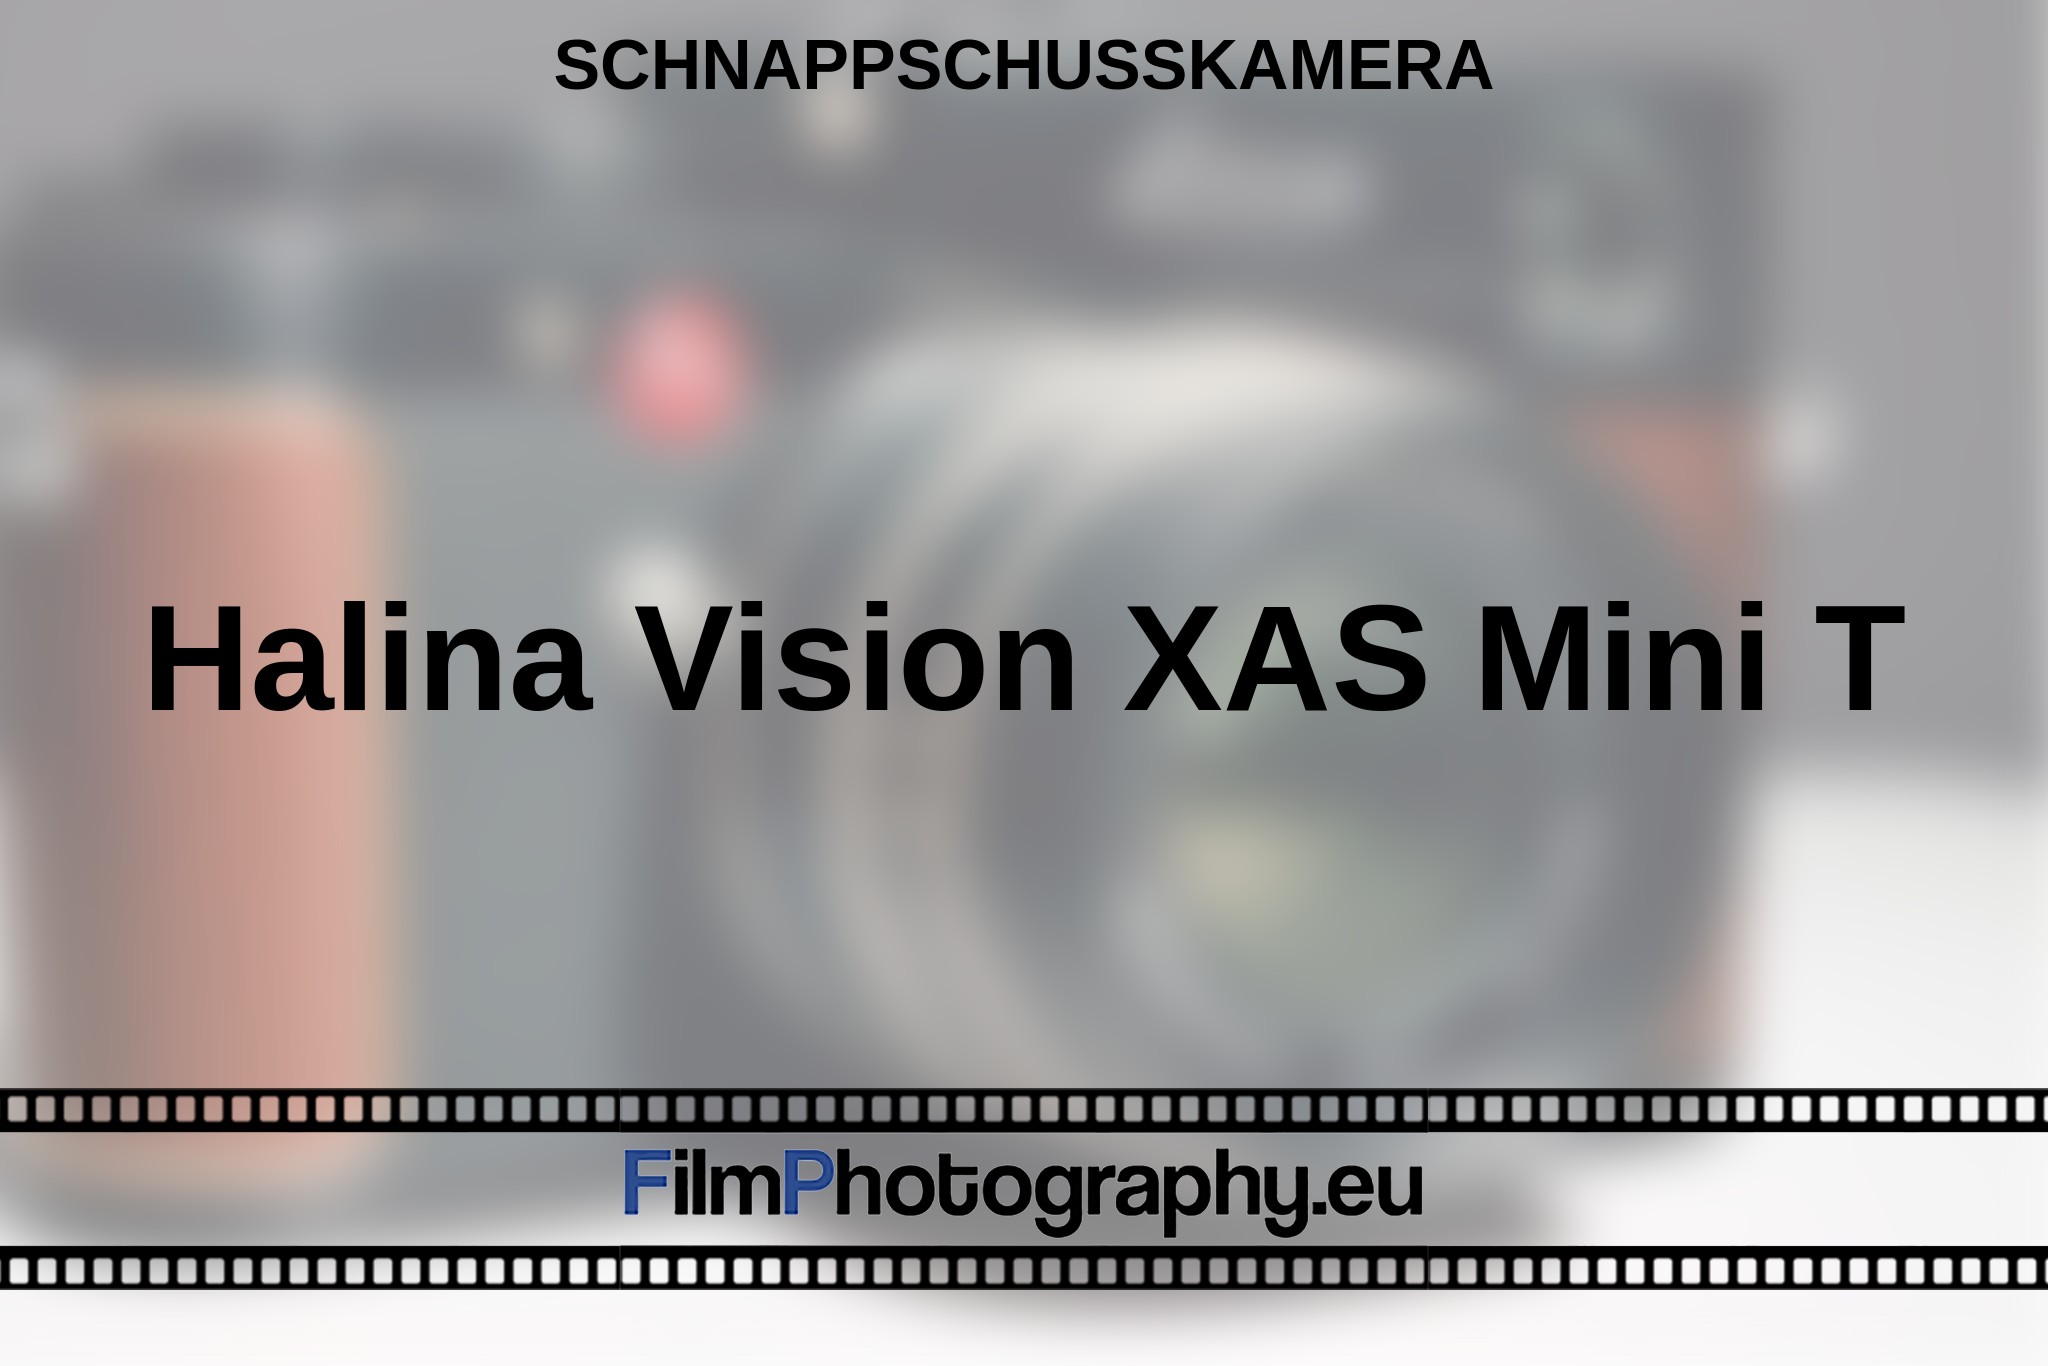 halina-vision-xas-mini-t-schnappschusskamera-bnv.jpg